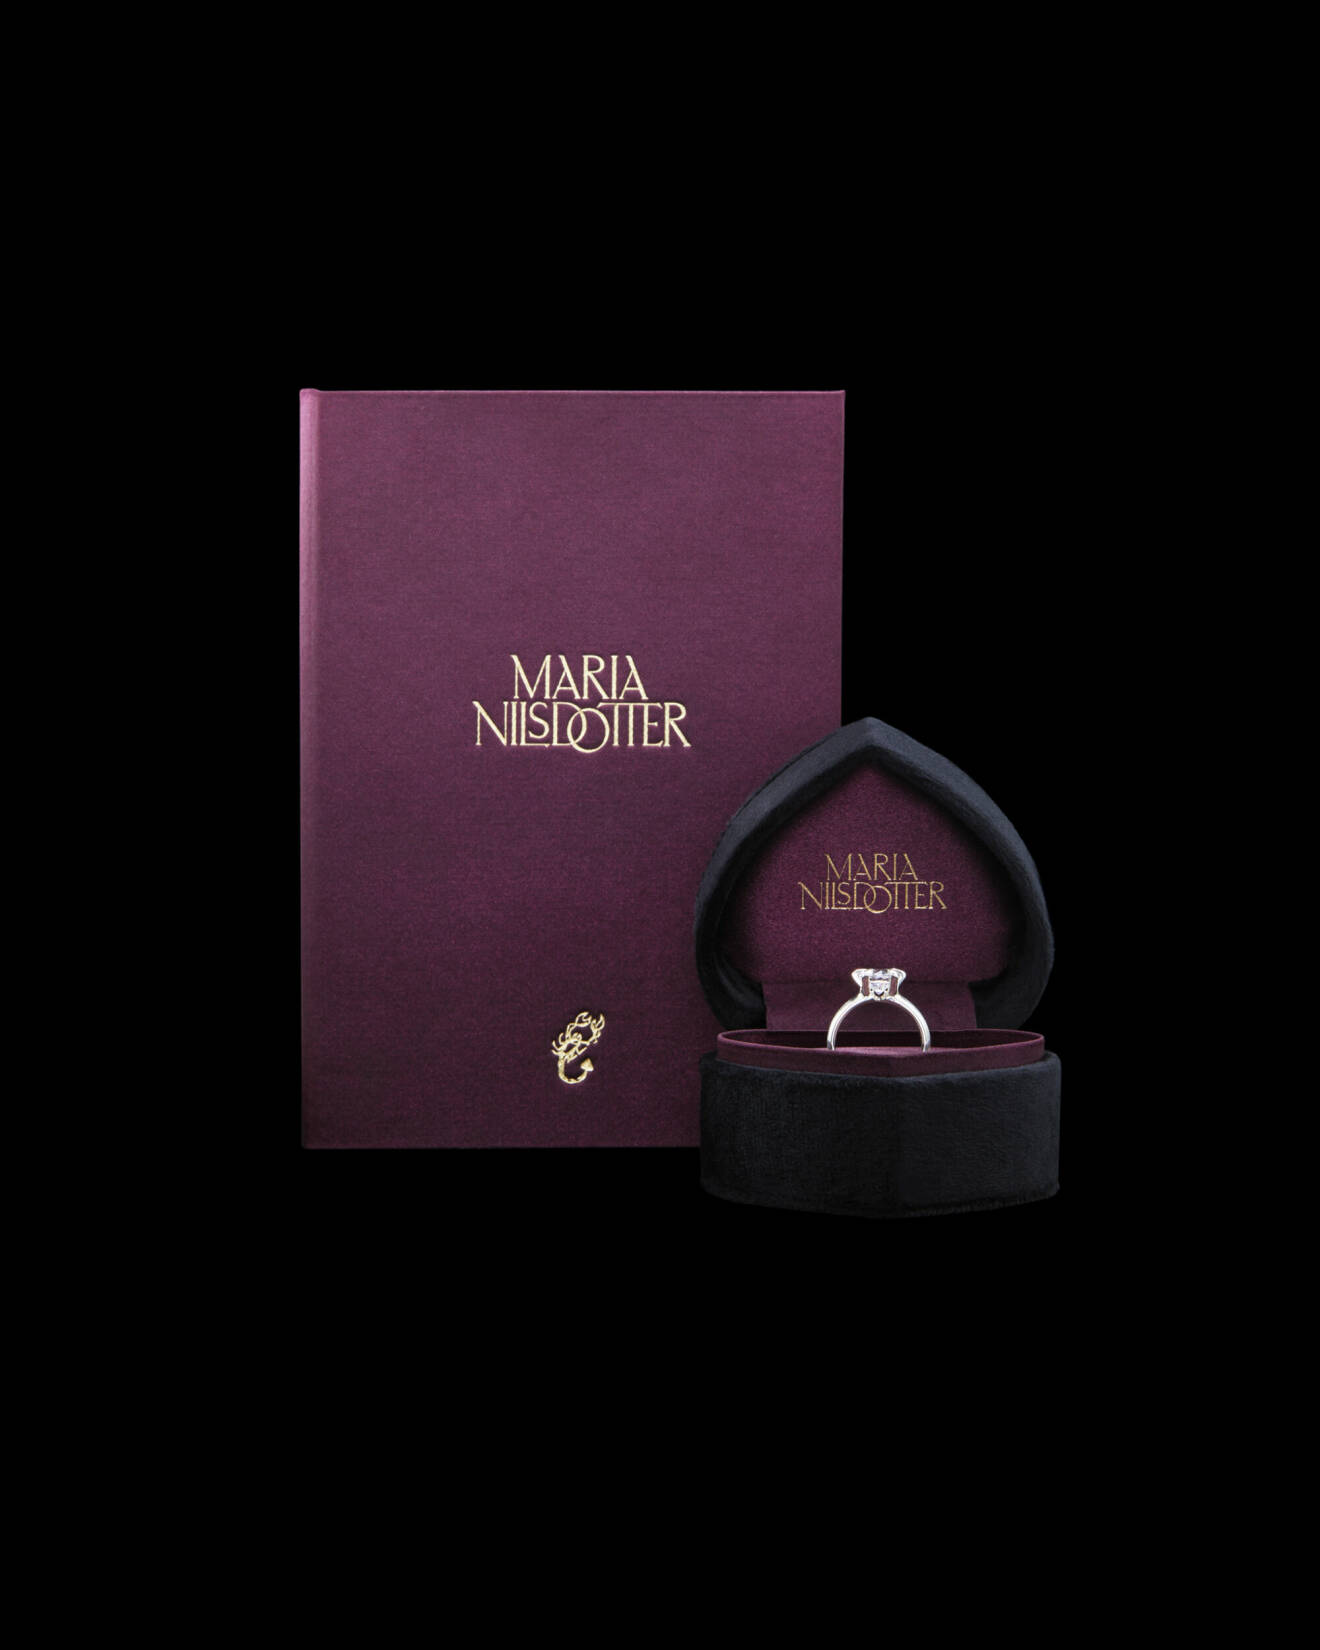 Smycken från Romance-segmentet visas med nya exklusiva askar, förpackningar och certifikat.